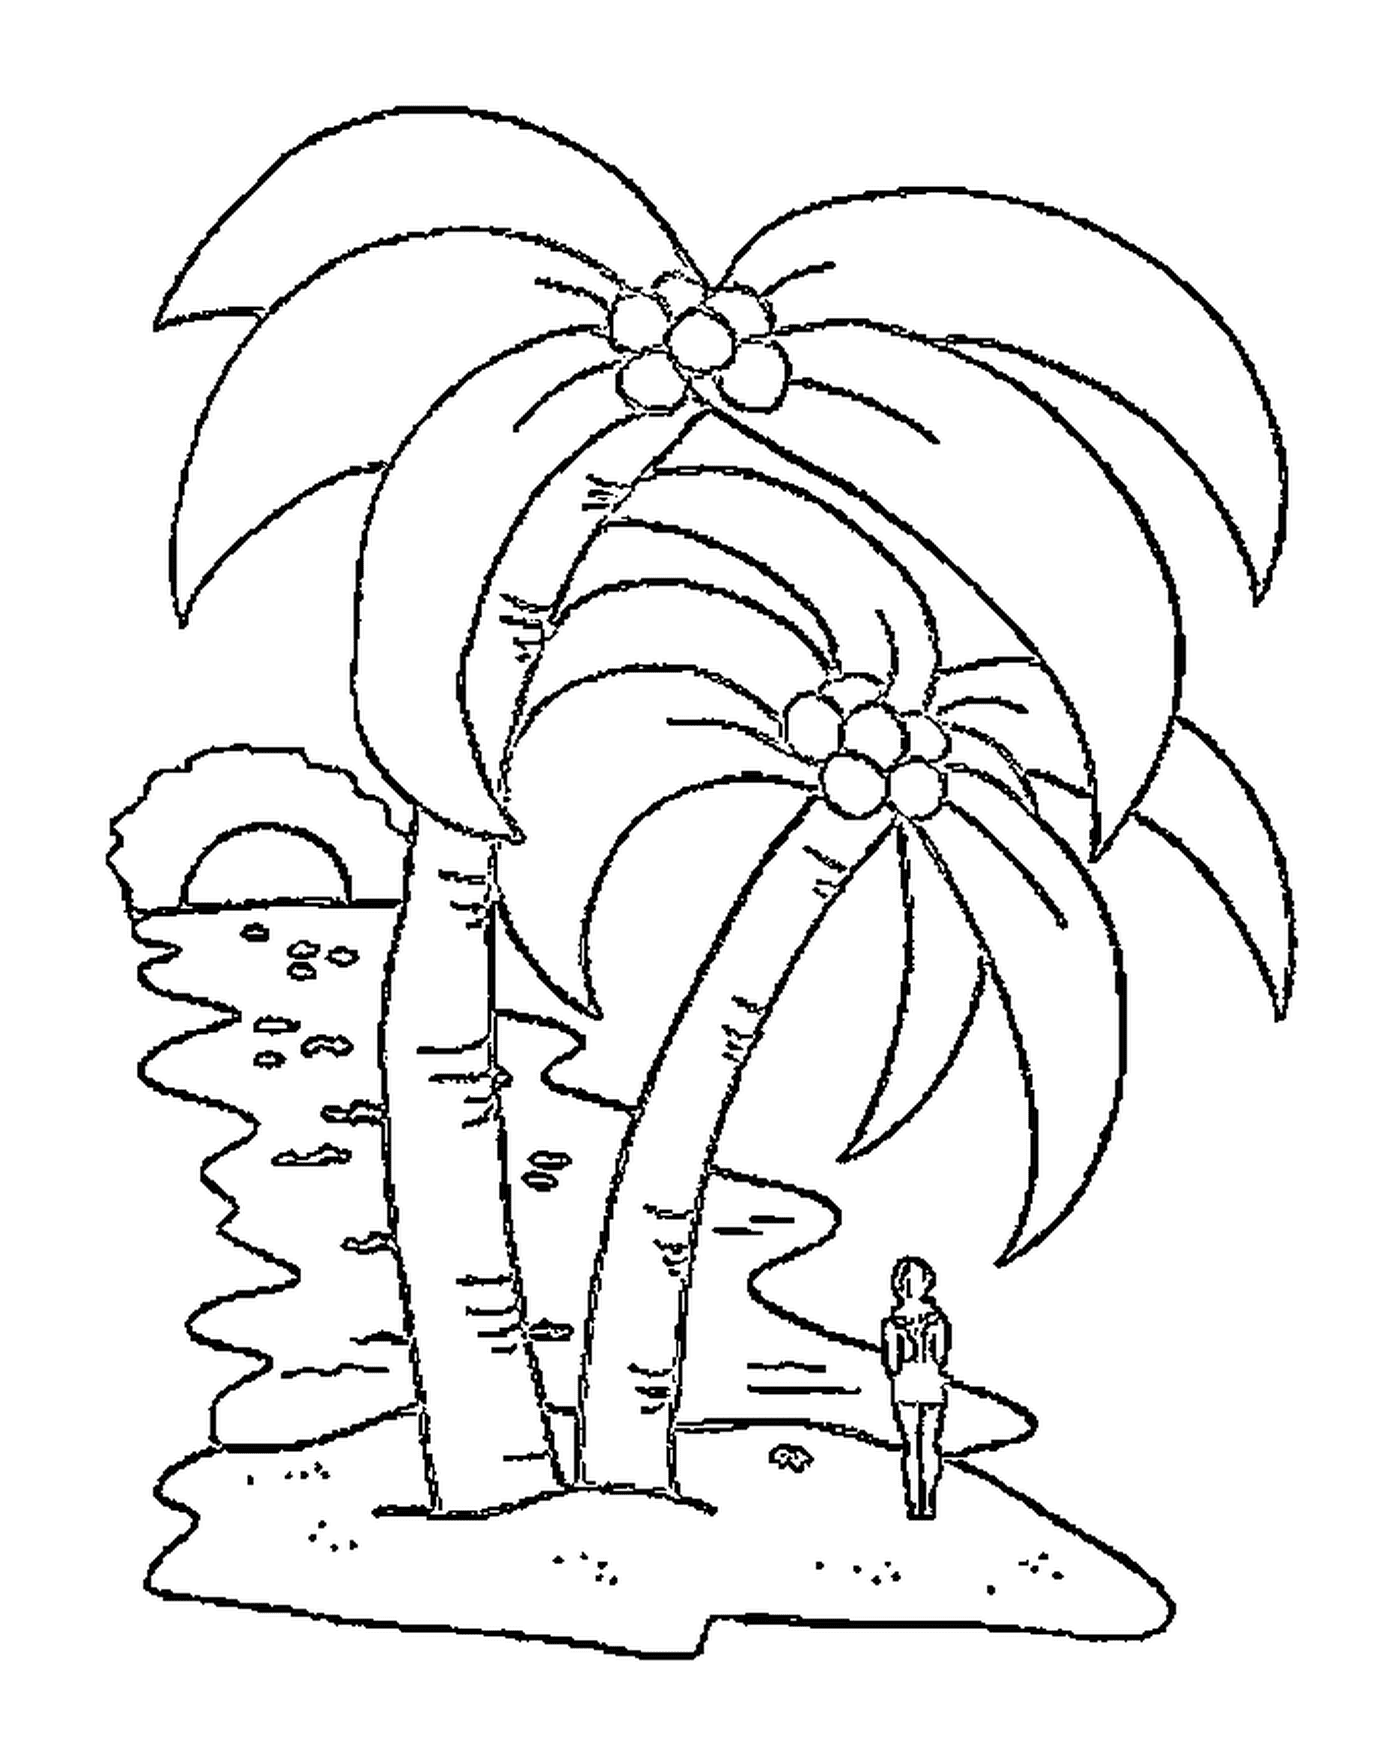  Palmera número 2, palmeras bonitas 